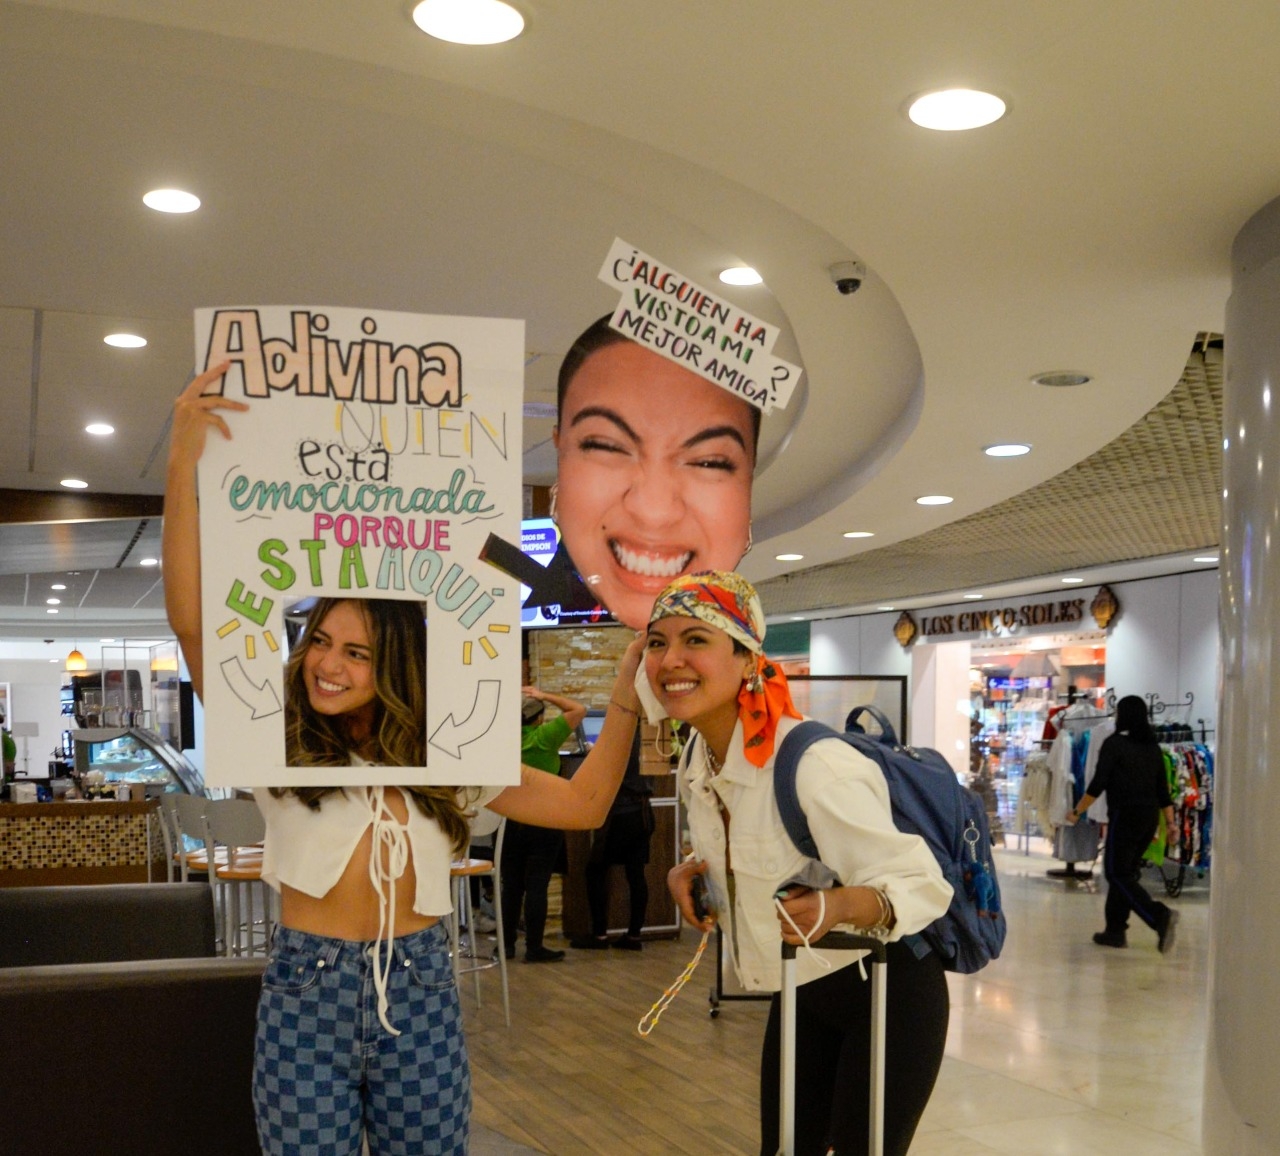 Recibe a su amiga con ingenioso cartel en el aeropuerto de Mérida